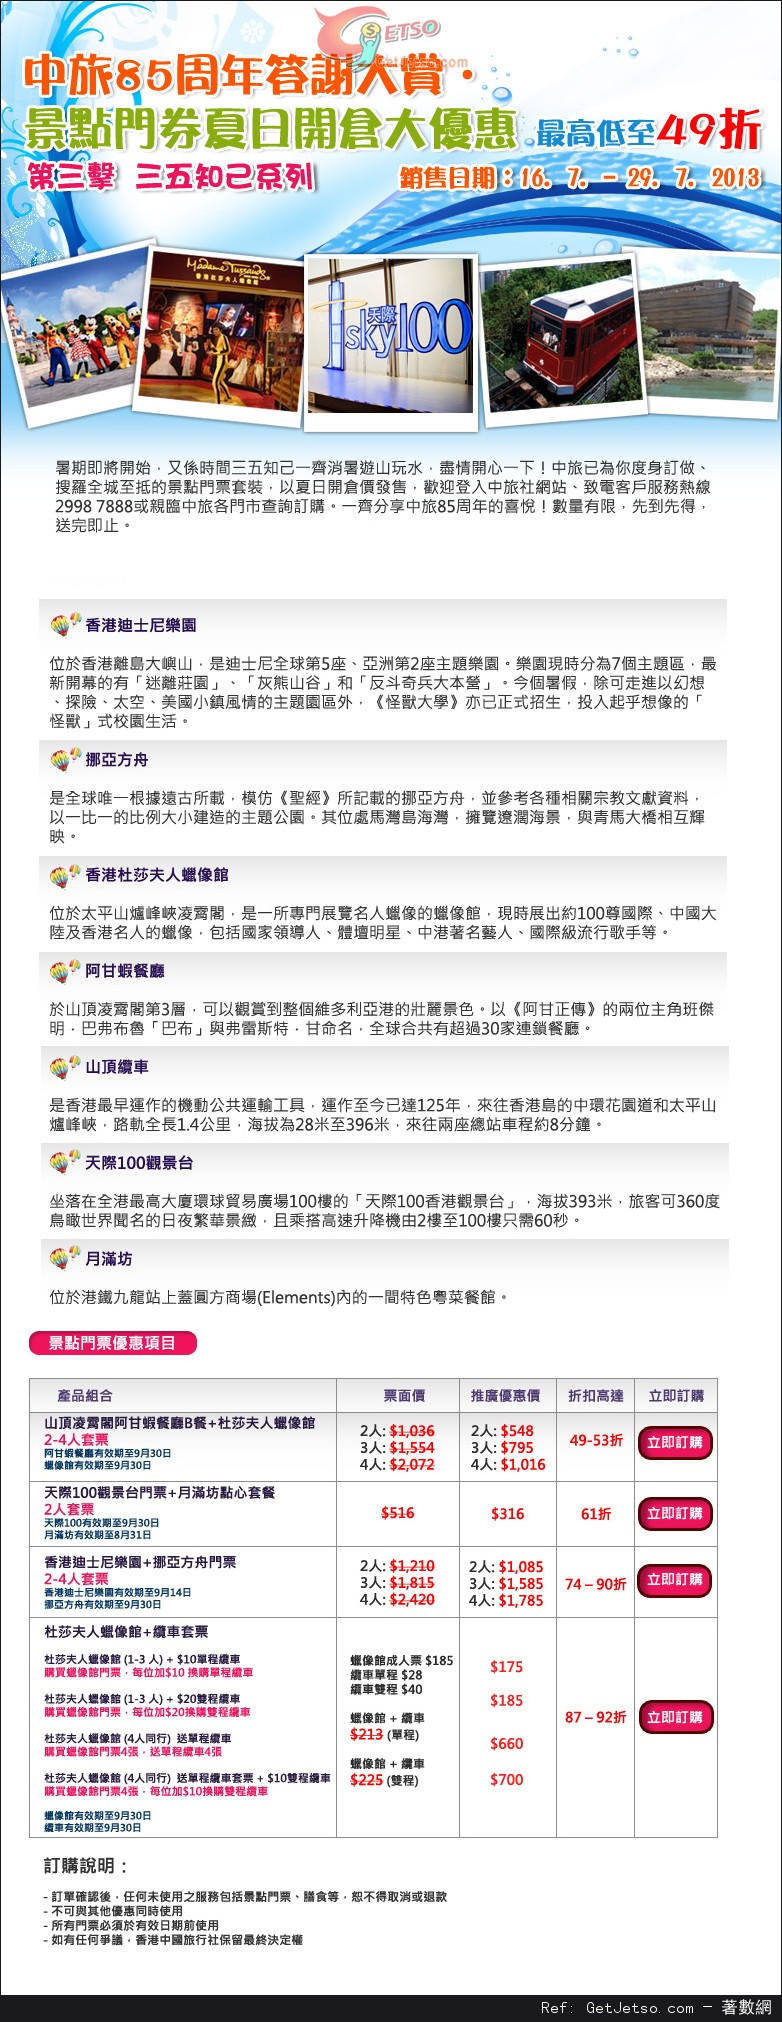 中旅社香港景點門券開倉低至49折優惠(至13年7月29日)圖片1